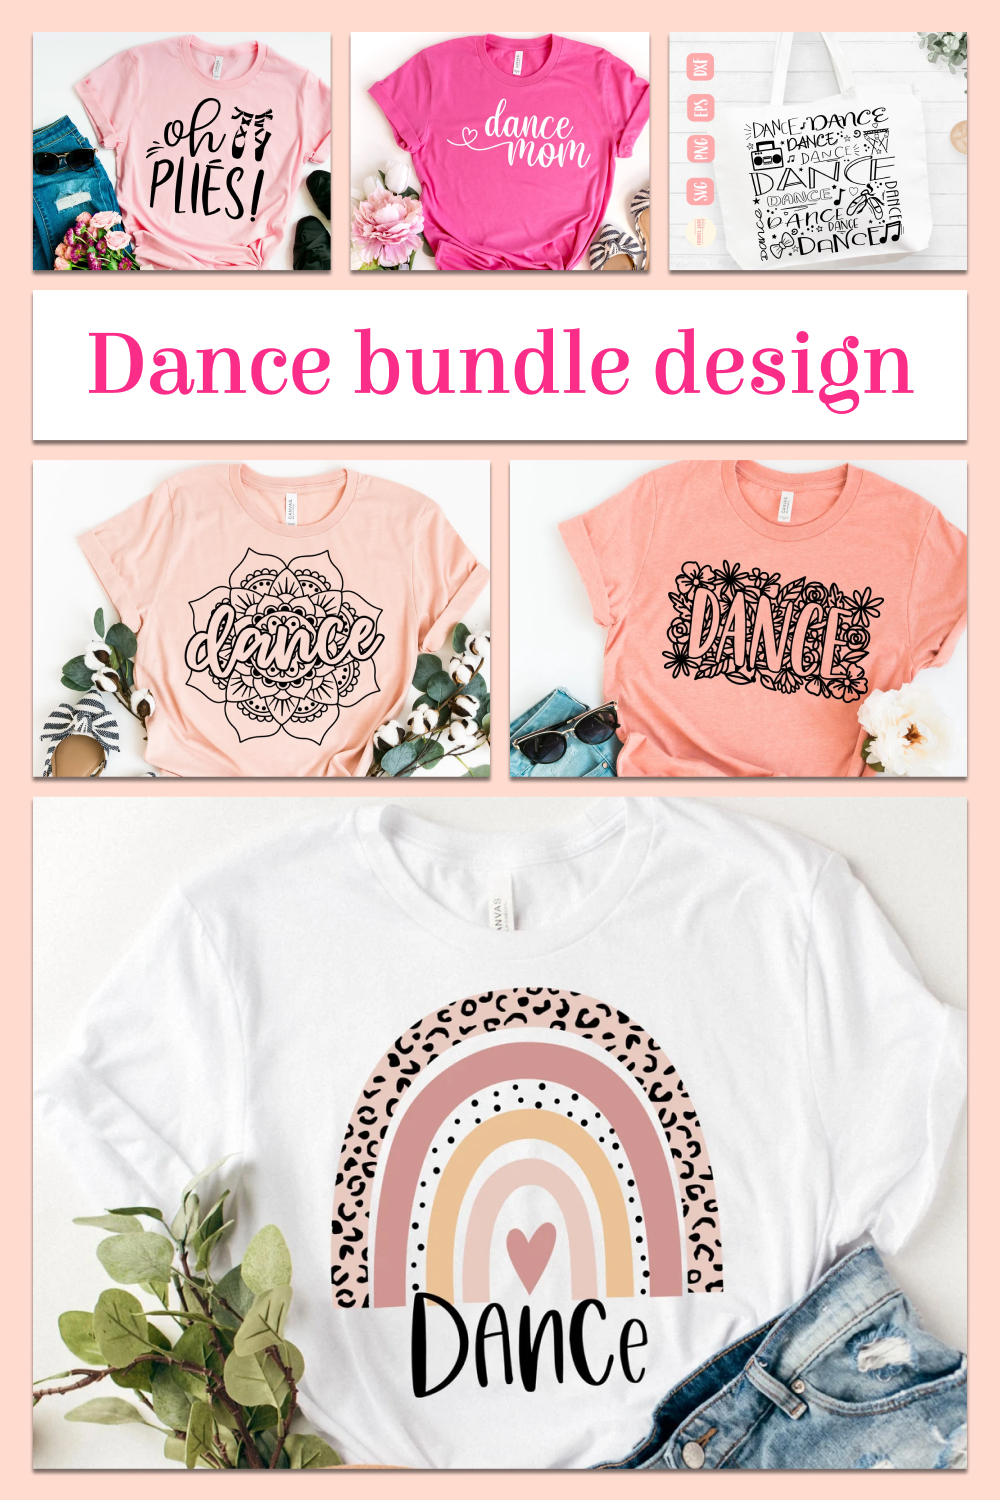 Dance bundle design of pintererest.